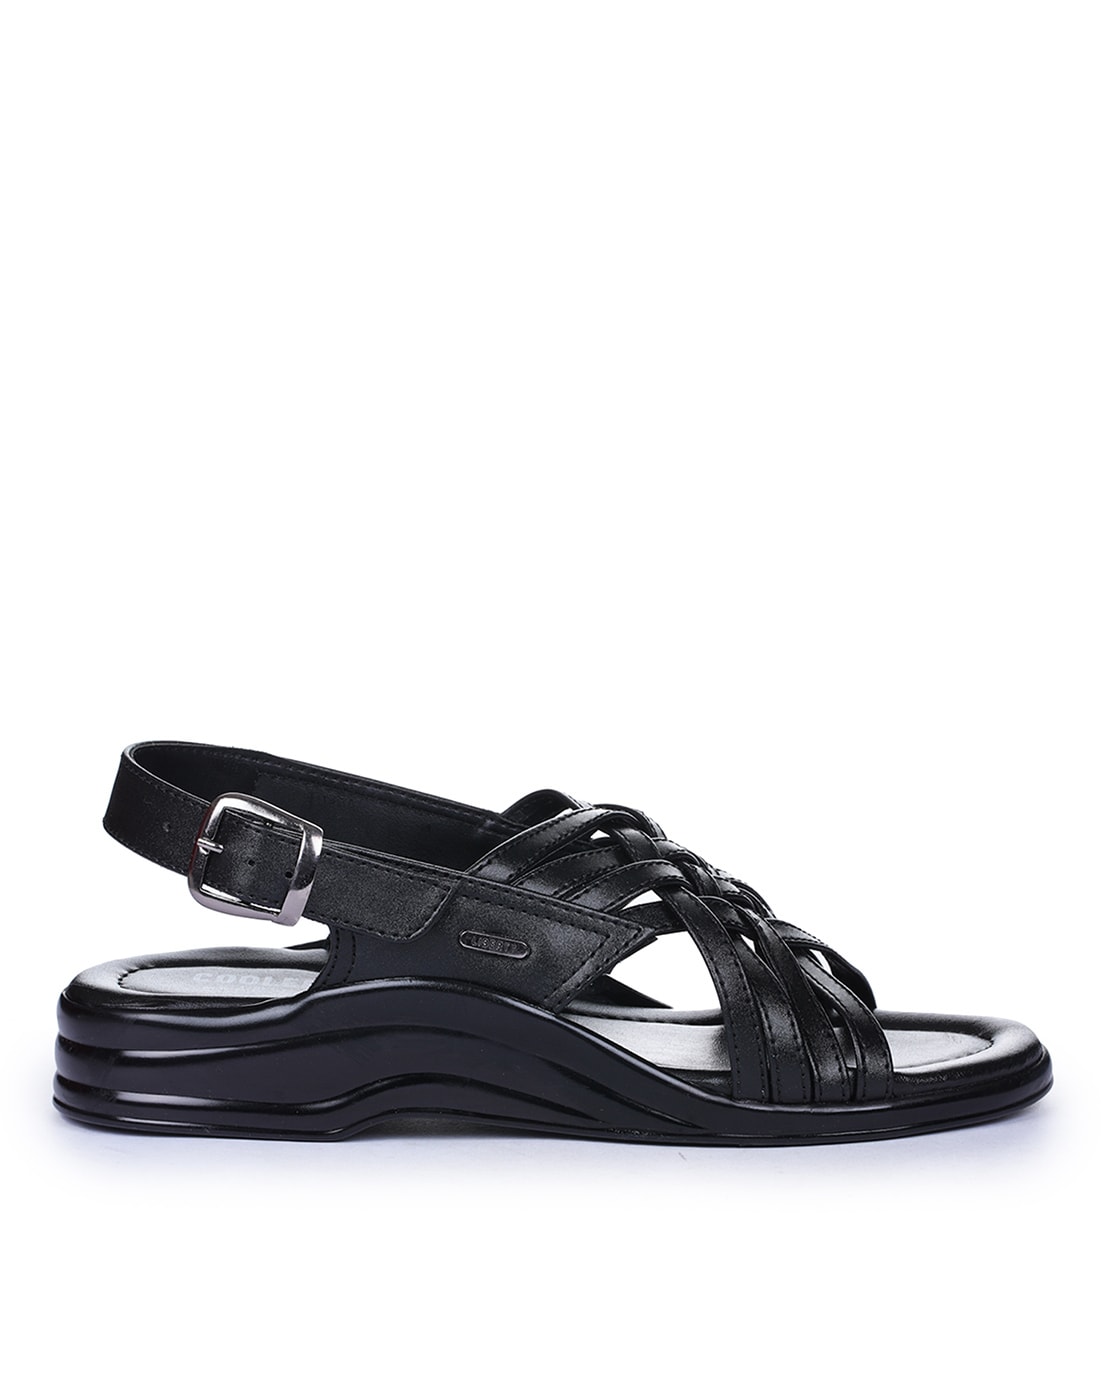 LIBERTY ELIZA-10 Women Black Sandals - Buy LIBERTY ELIZA-10 Women Black Sandals  Online at Best Price - Shop Online for Footwears in India | Flipkart.com